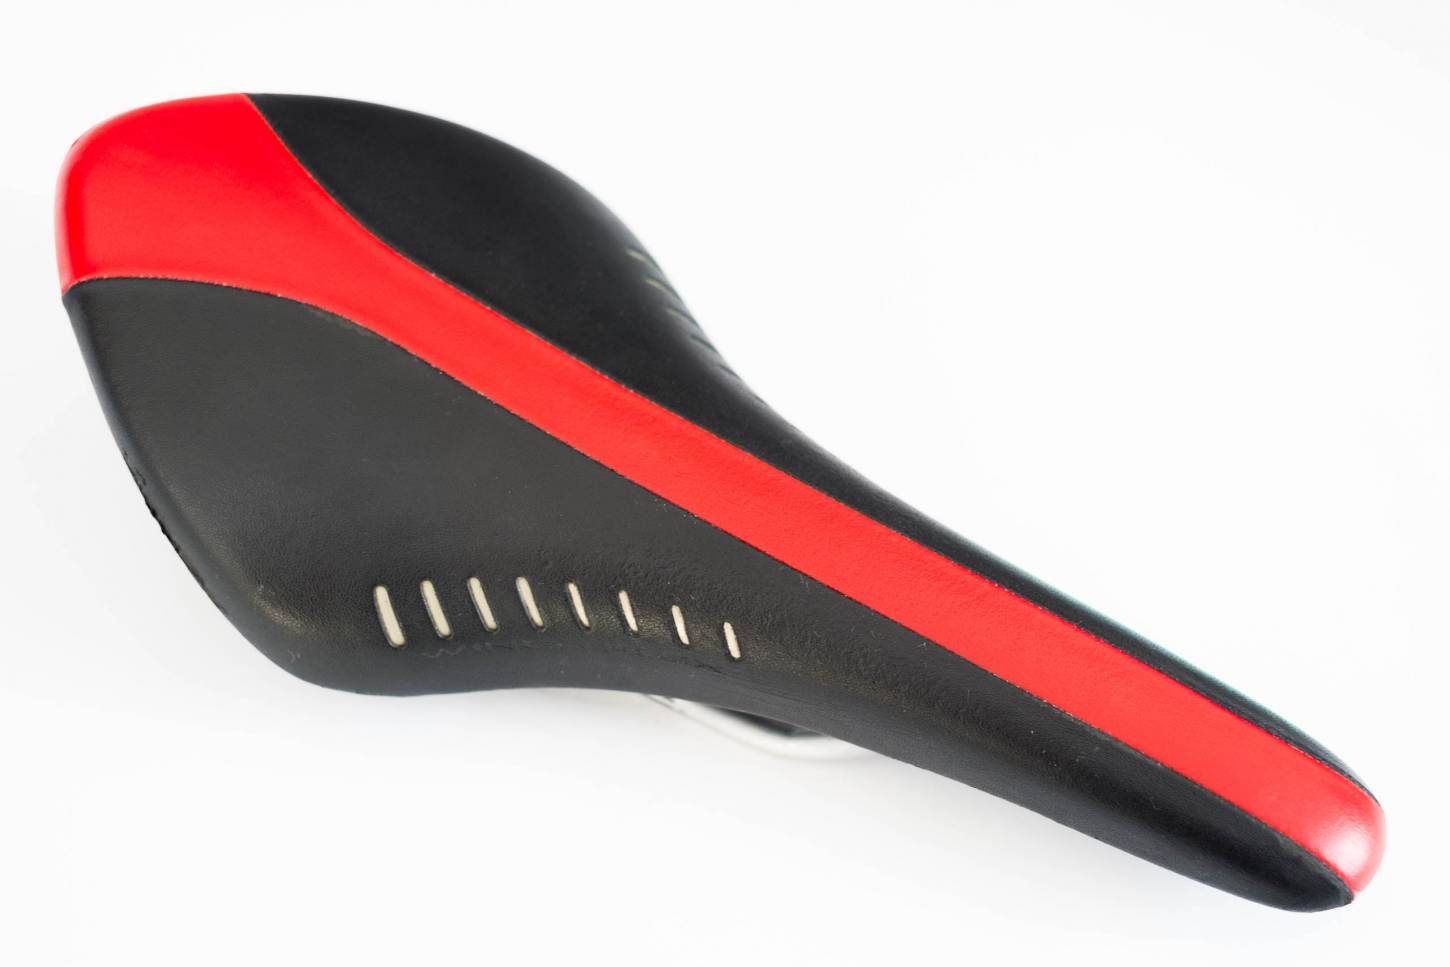 Fizik Arione Wing Flex sillín negro / rojo bicicleta de carretera de cuero MTB Hecho a mano en Italia